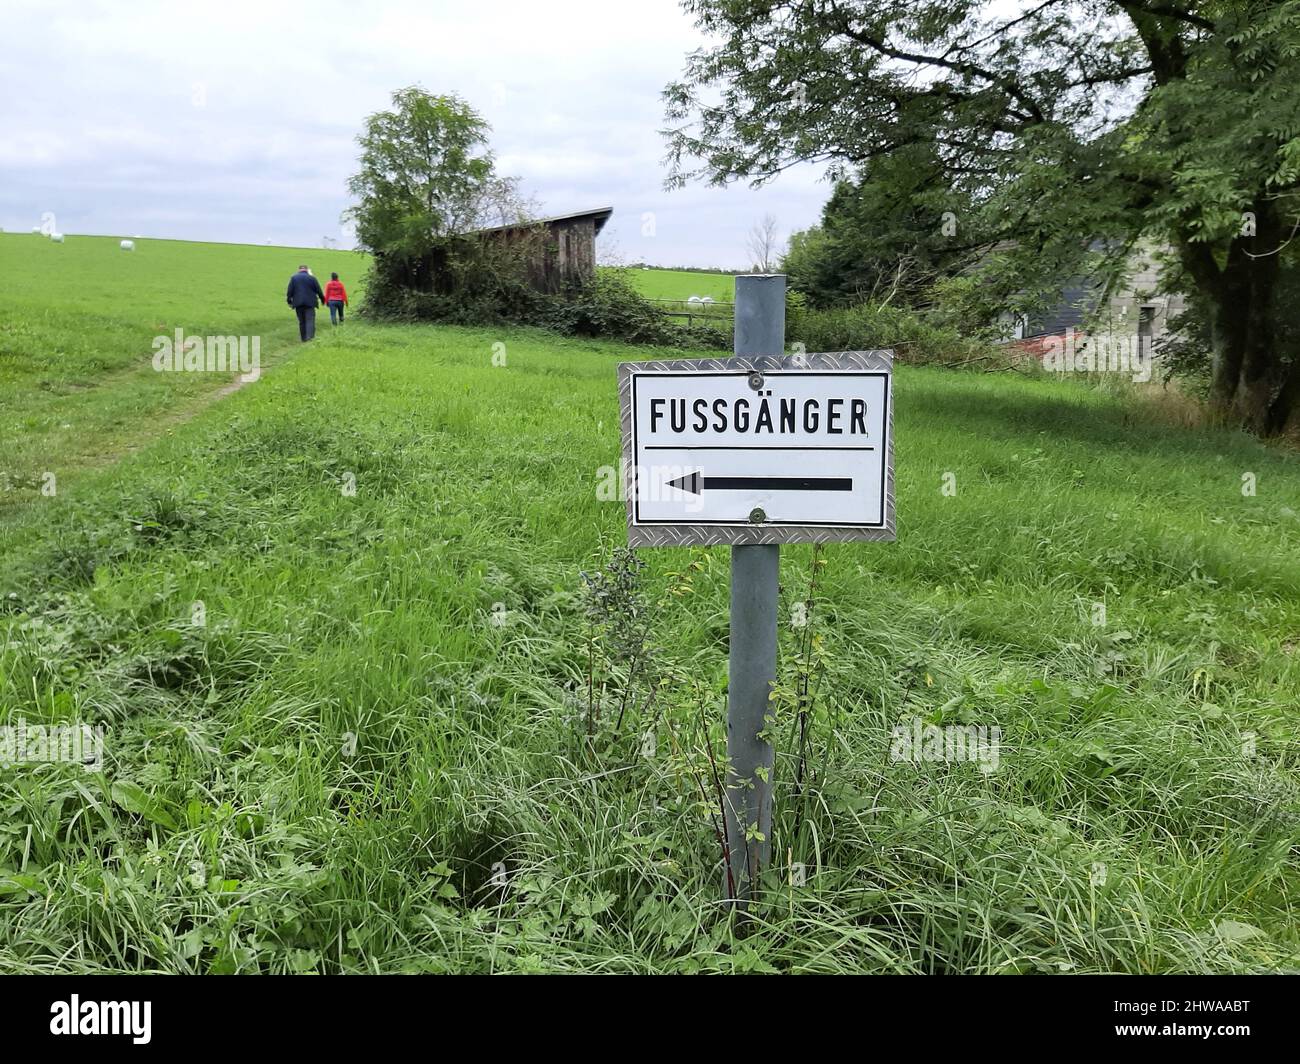 Señal de guía para peatones/caminantes en una granja agrícola, Alemania Foto de stock